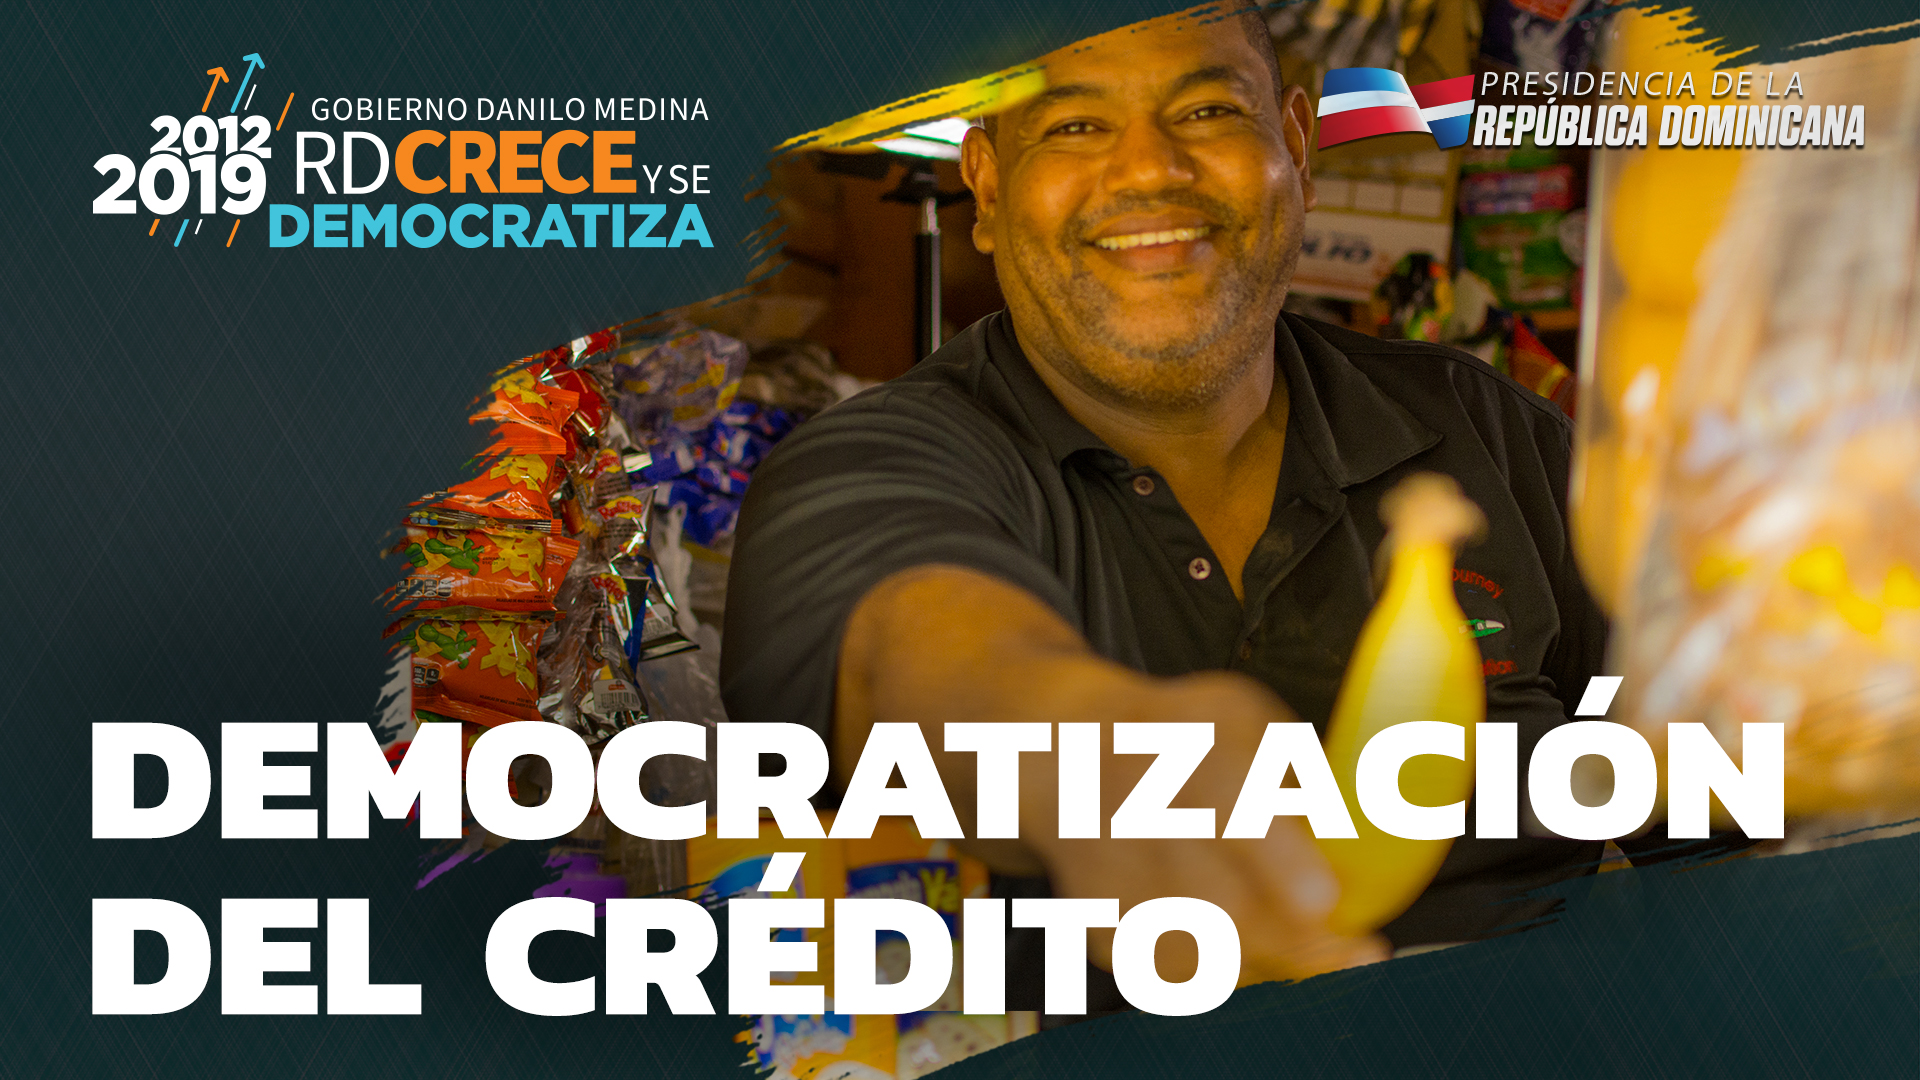 REPÚBLICA DOMINICANA: Gracias a democratización del crédito impulsada en el campo y en la ciudad desde 2012, se demuestra que los pobres son buena paga